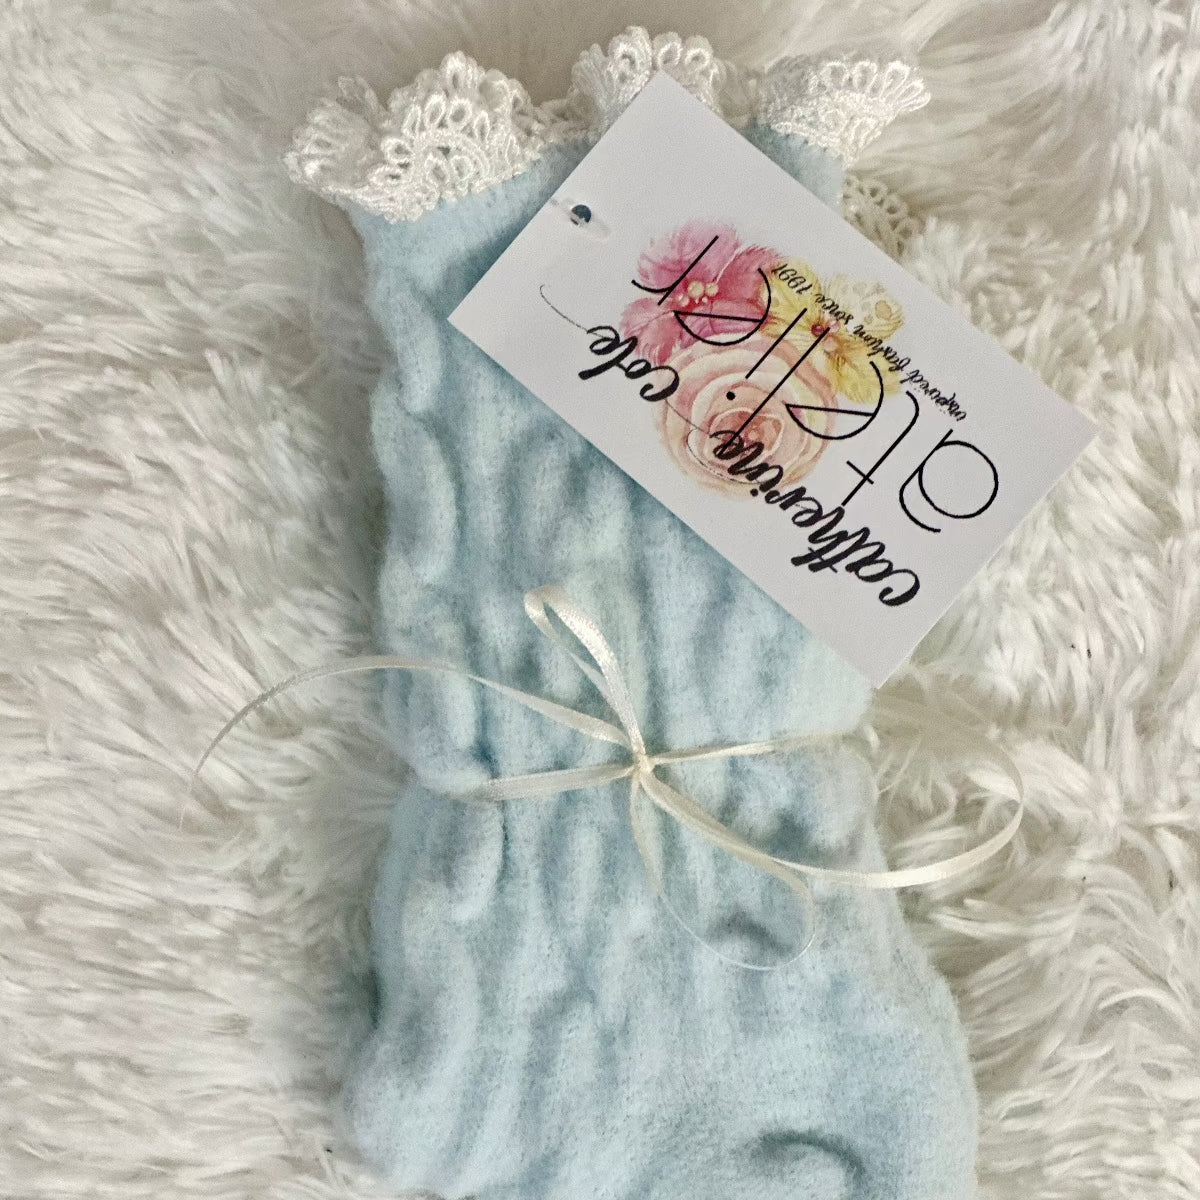 blue Heavenly soft ladies socks, slipper socks women's, gift socks ladies.